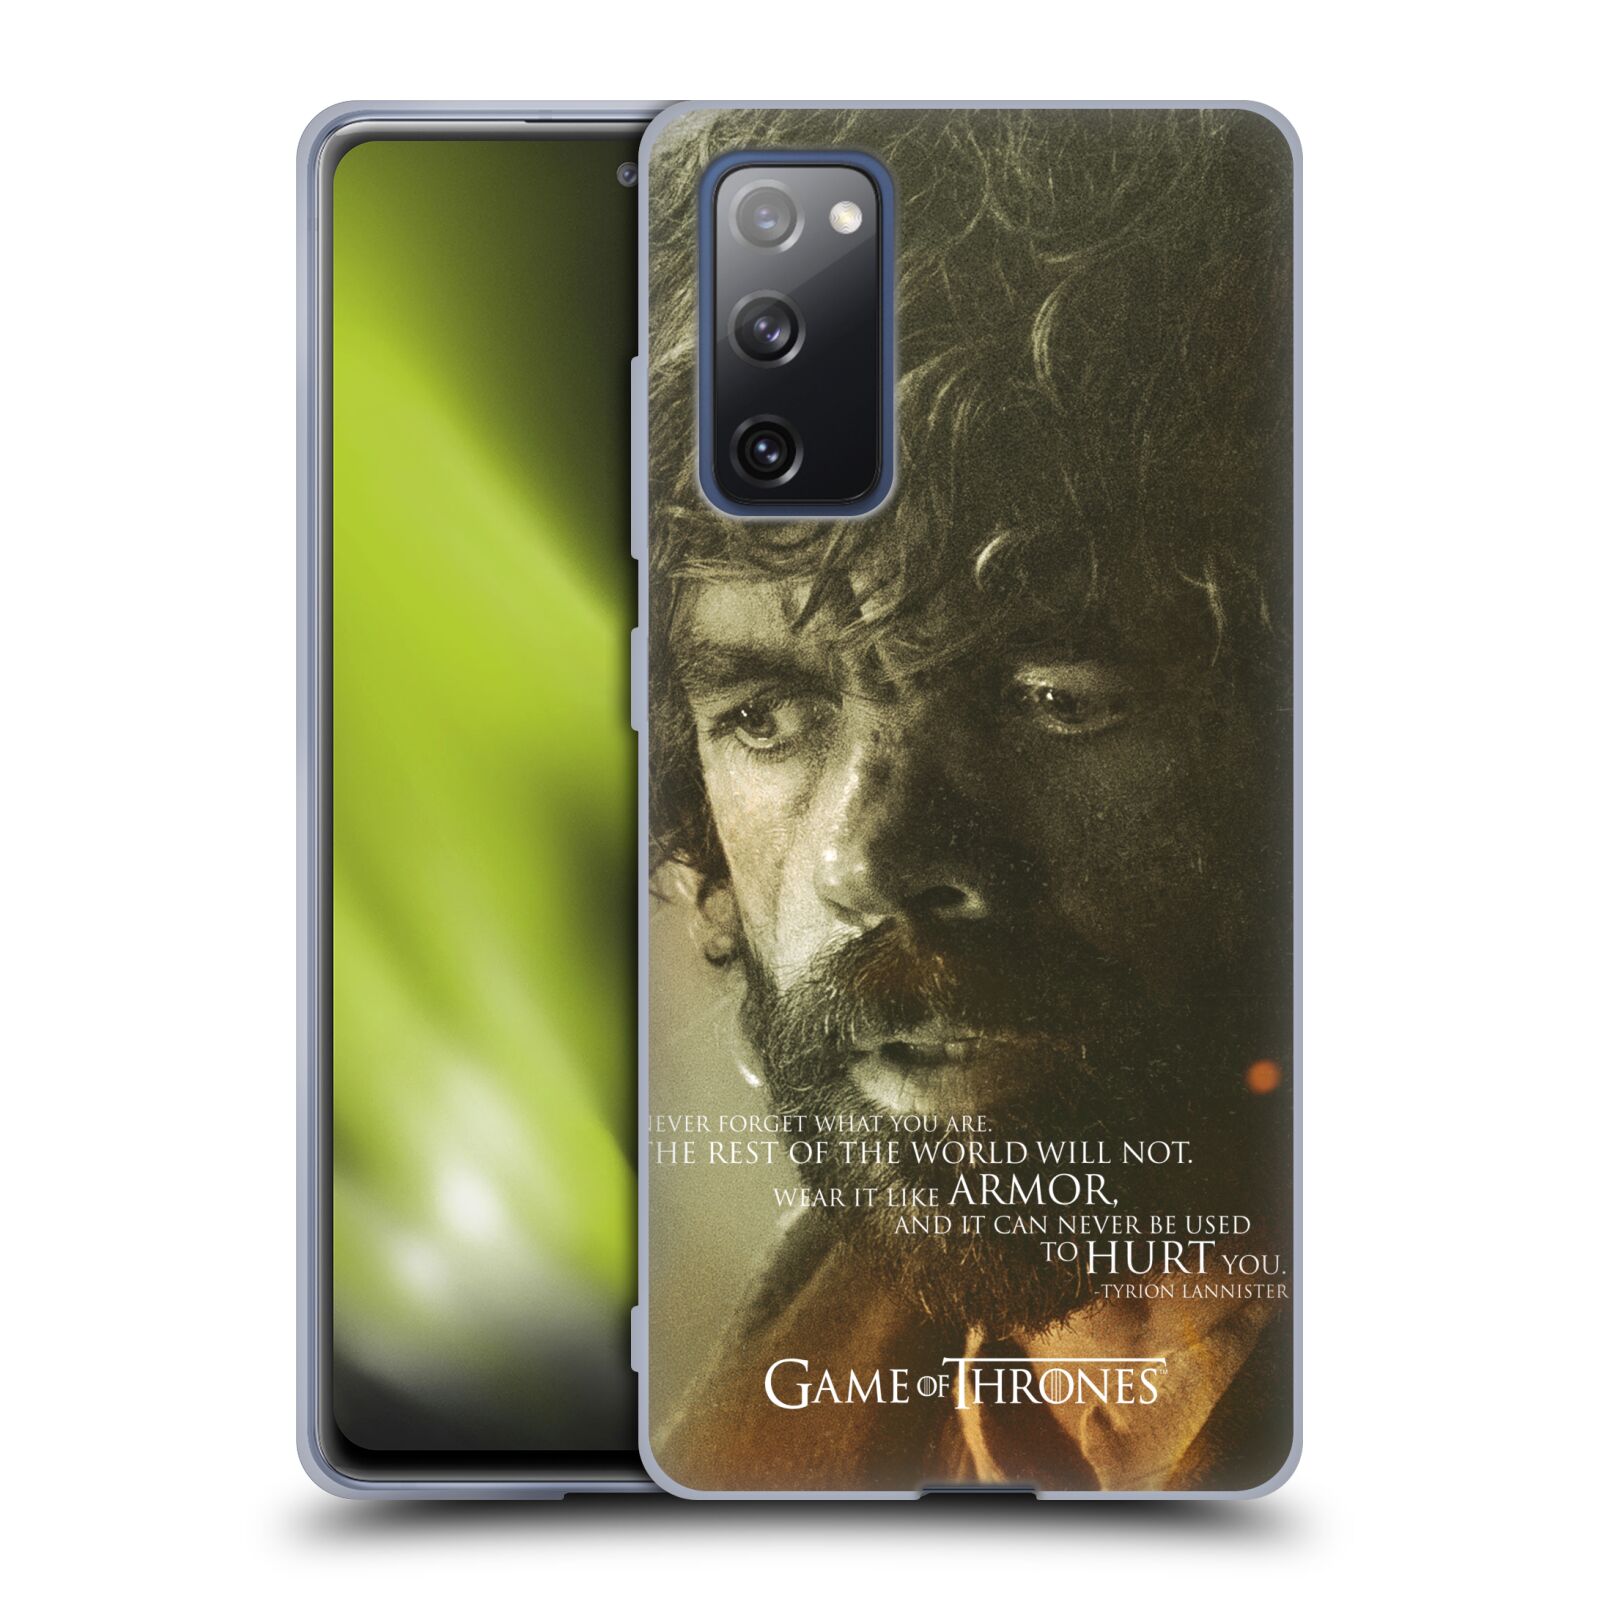 Silikonové pouzdro na mobil Samsung Galaxy S20 FE - Head Case - Hra o trůny - Tyrion Lannister (Silikonový kryt, obal, pouzdro na mobilní telefon Samsung Galaxy S20 FE s motivem Hra o trůny - Tyrion Lannister)